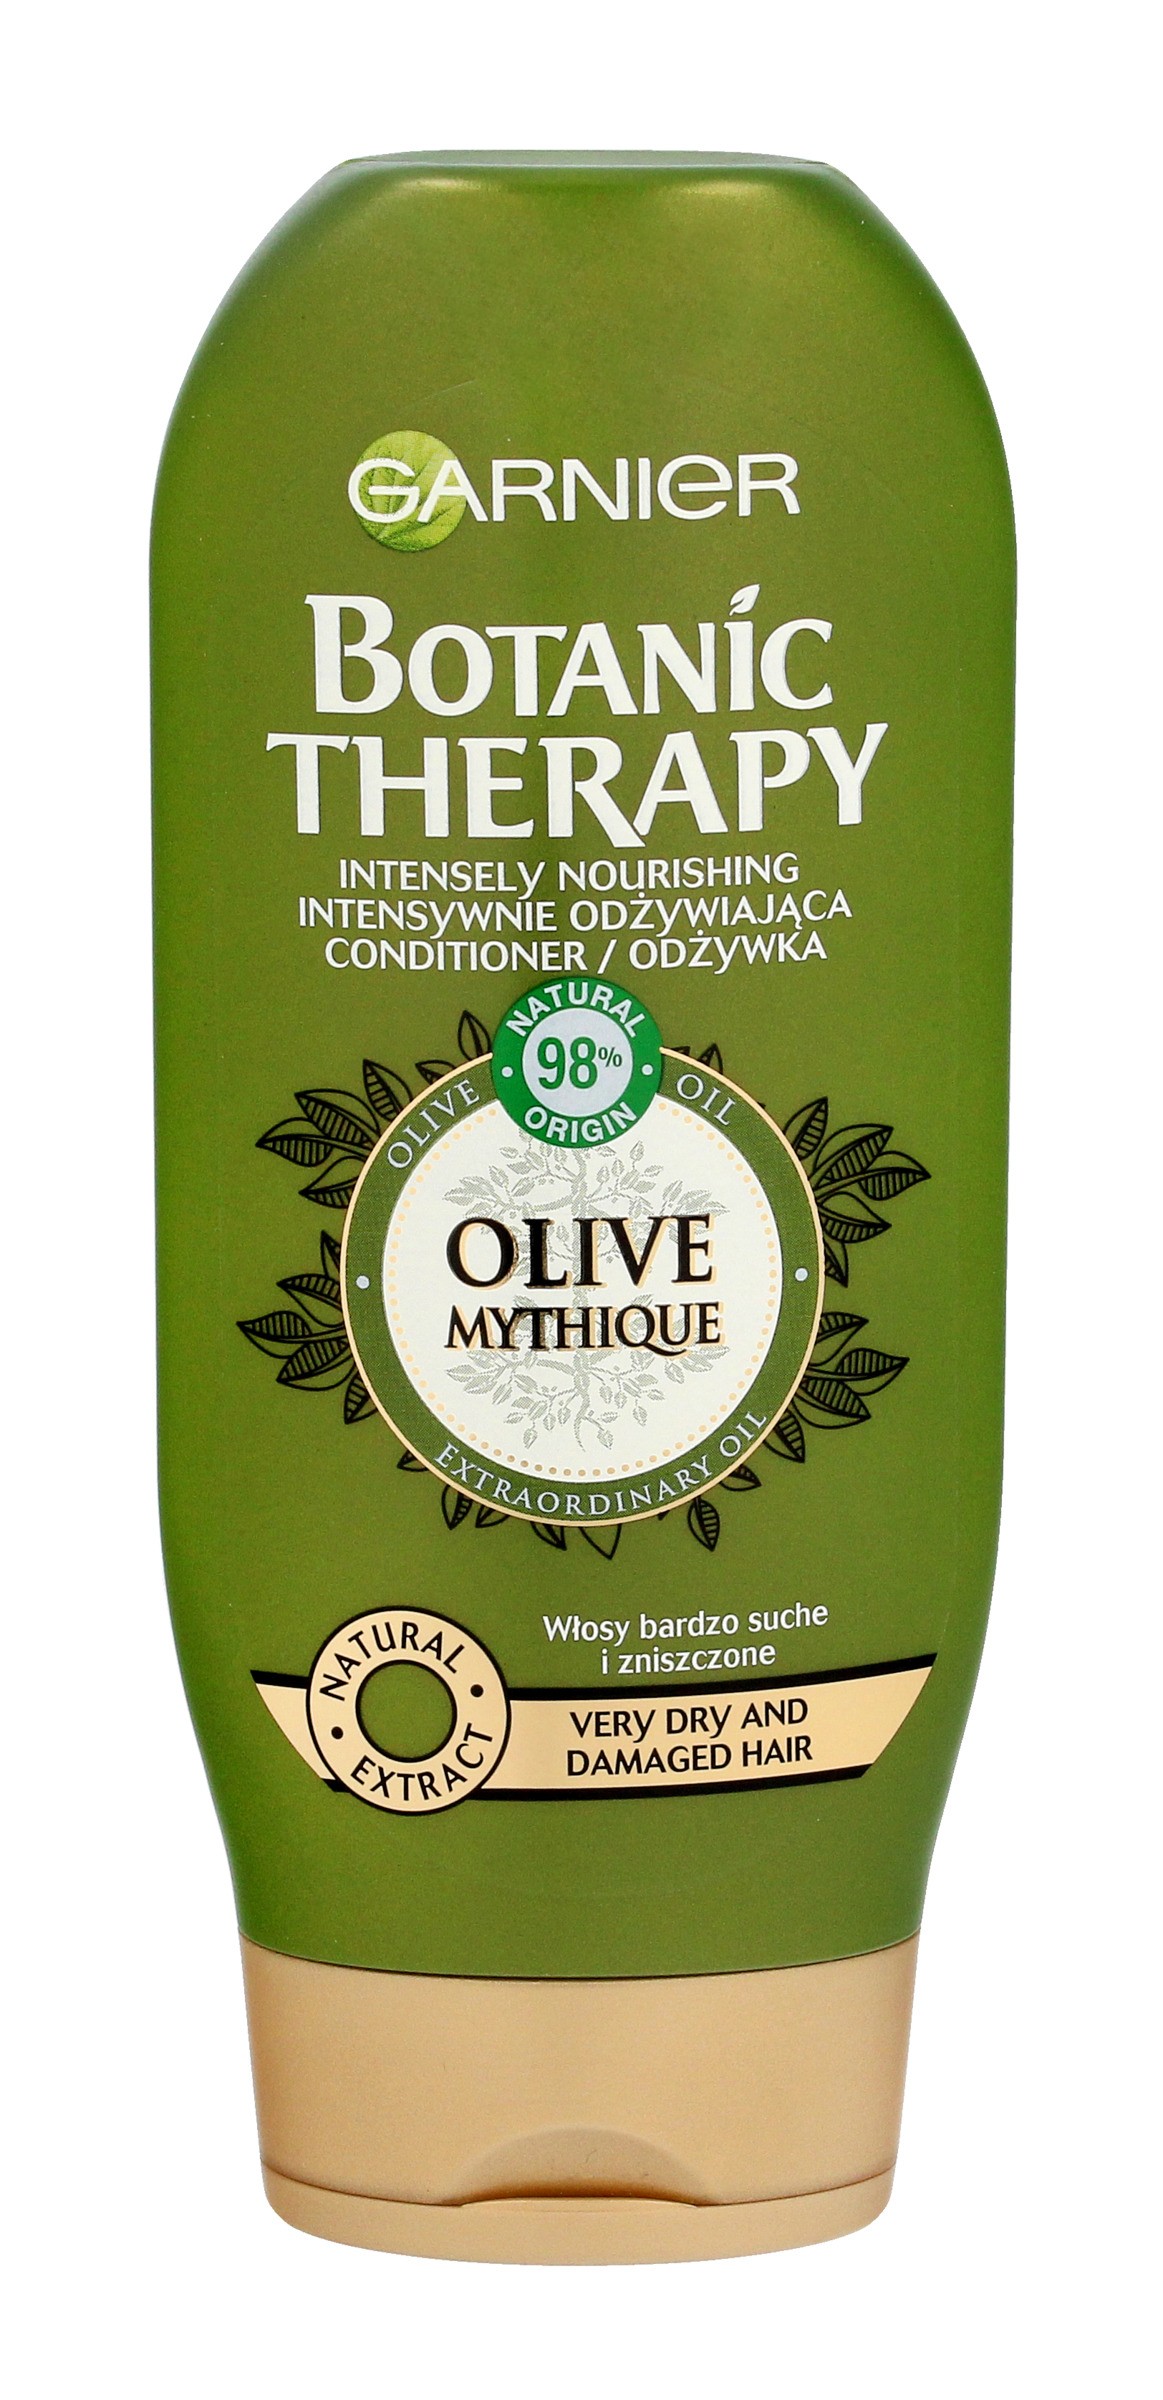 garnier botanic therapy mityczna oliwka odżywka do włosów bardzo suchych